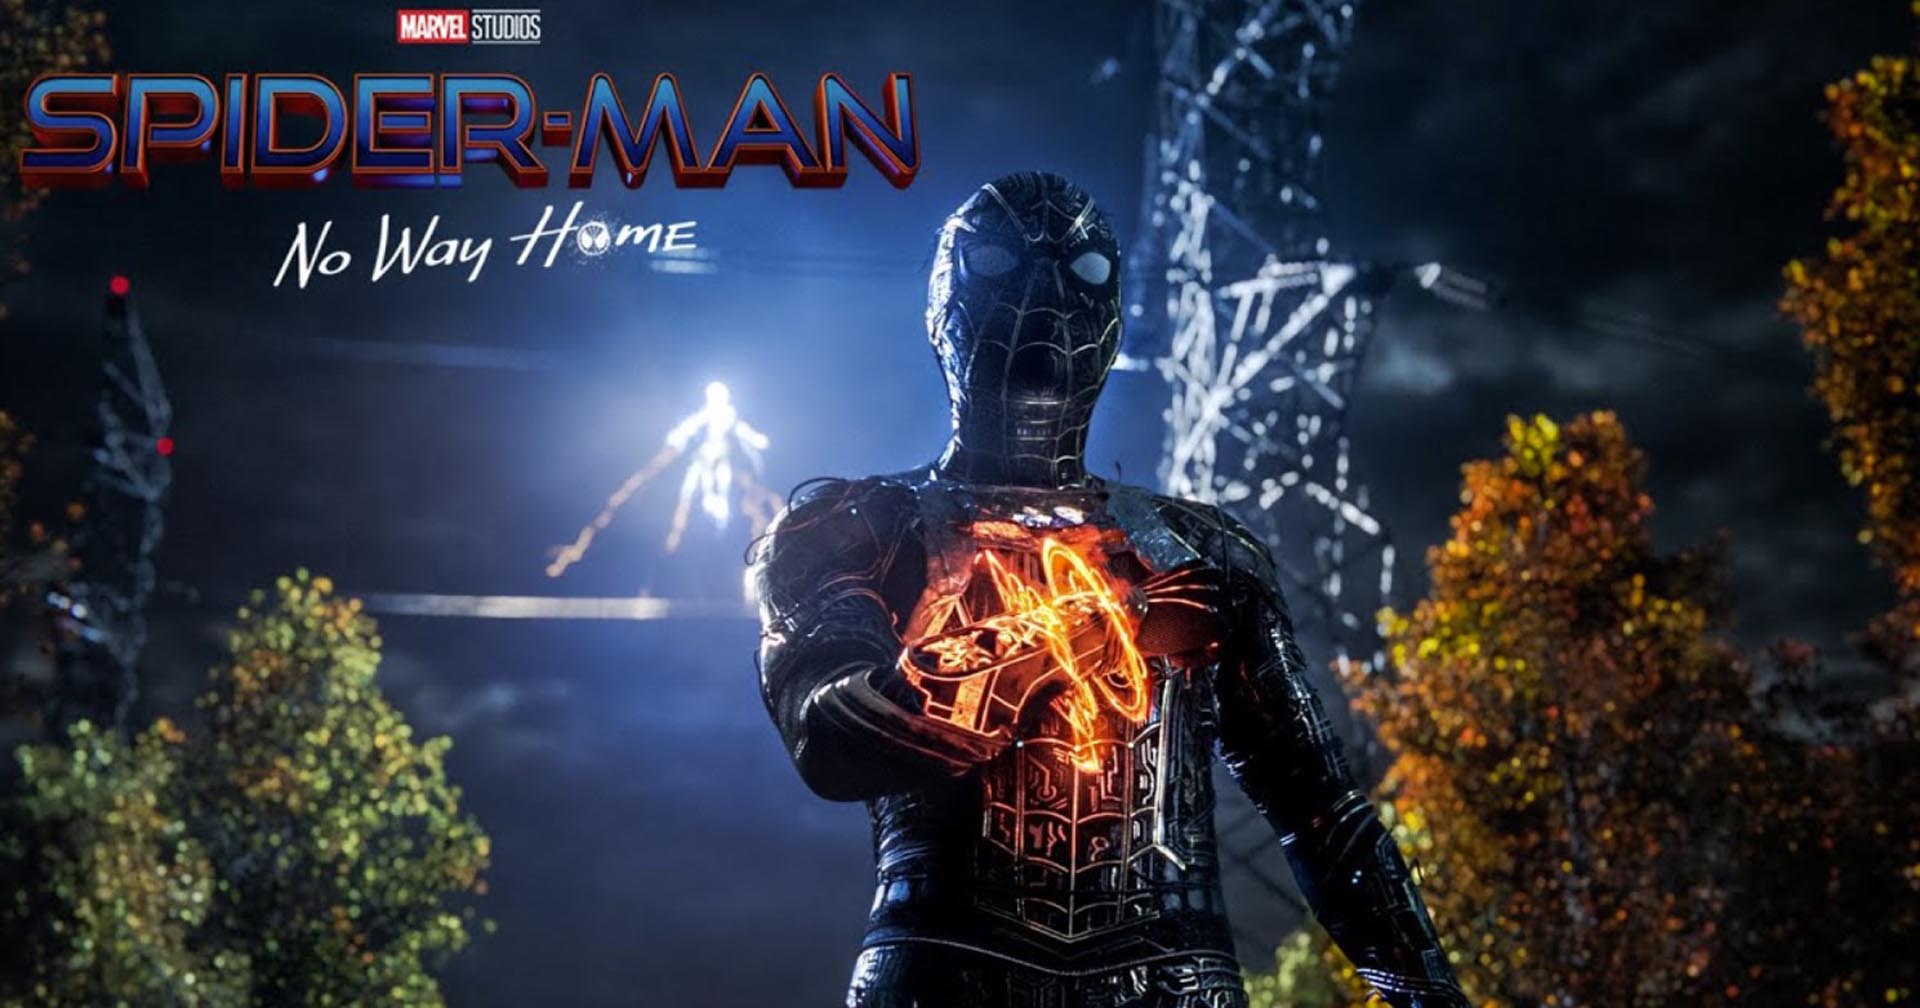 รวมรีแอ็กชันแรกบนโลกออนไลน์ของ ‘Spider-Man: No Way Home’ รีวิวแรกจากสื่อเป็นอย่างไรมาดูกัน